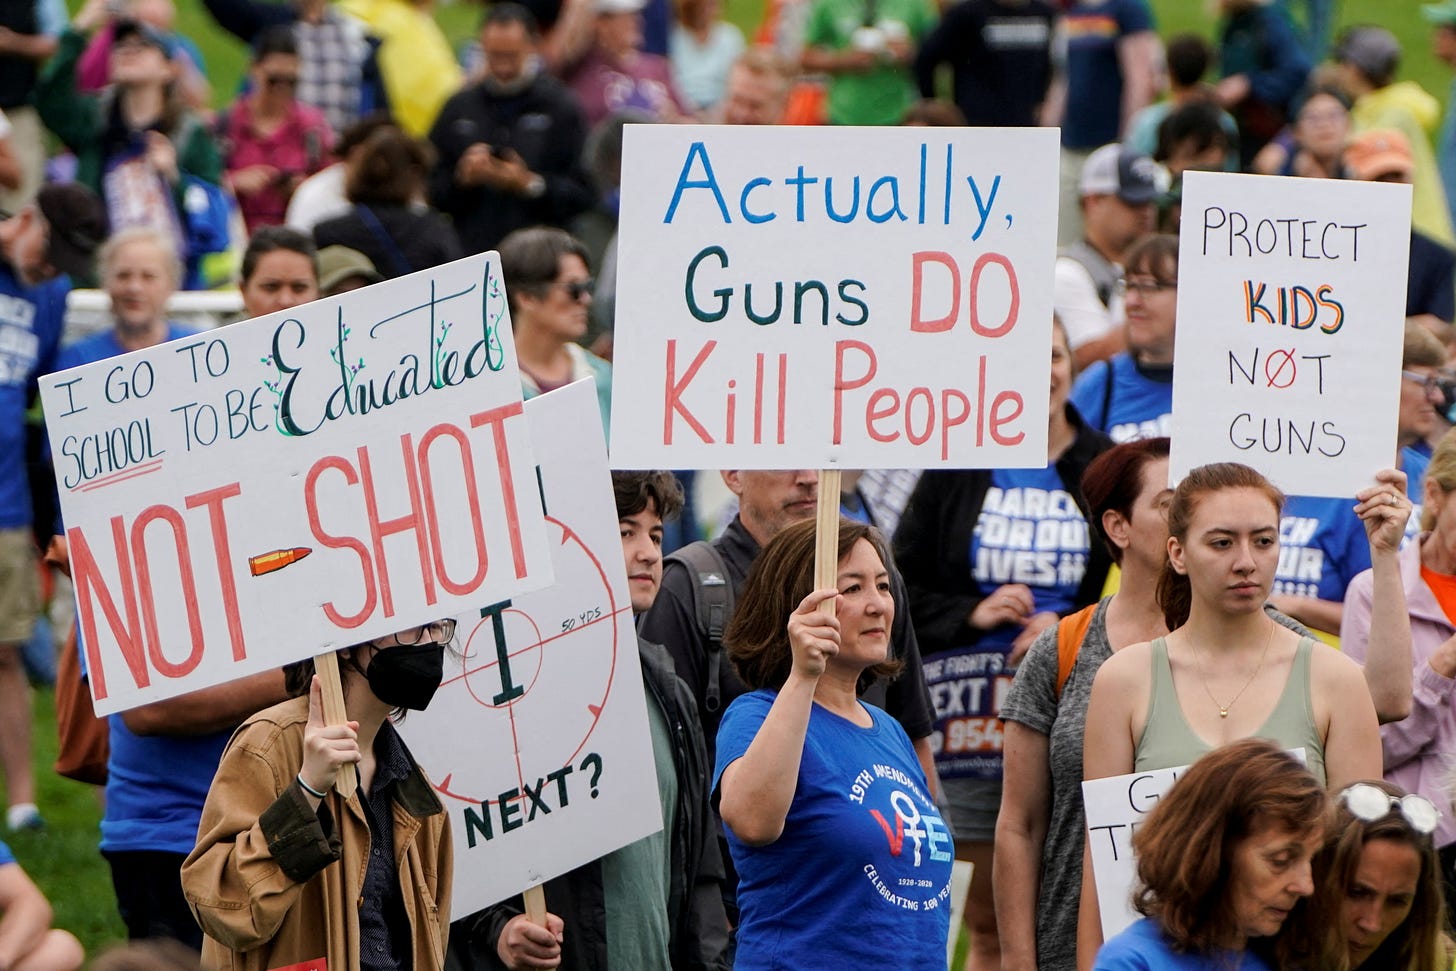 U.S. Senate advances first significant gun legislation in decades | Reuters